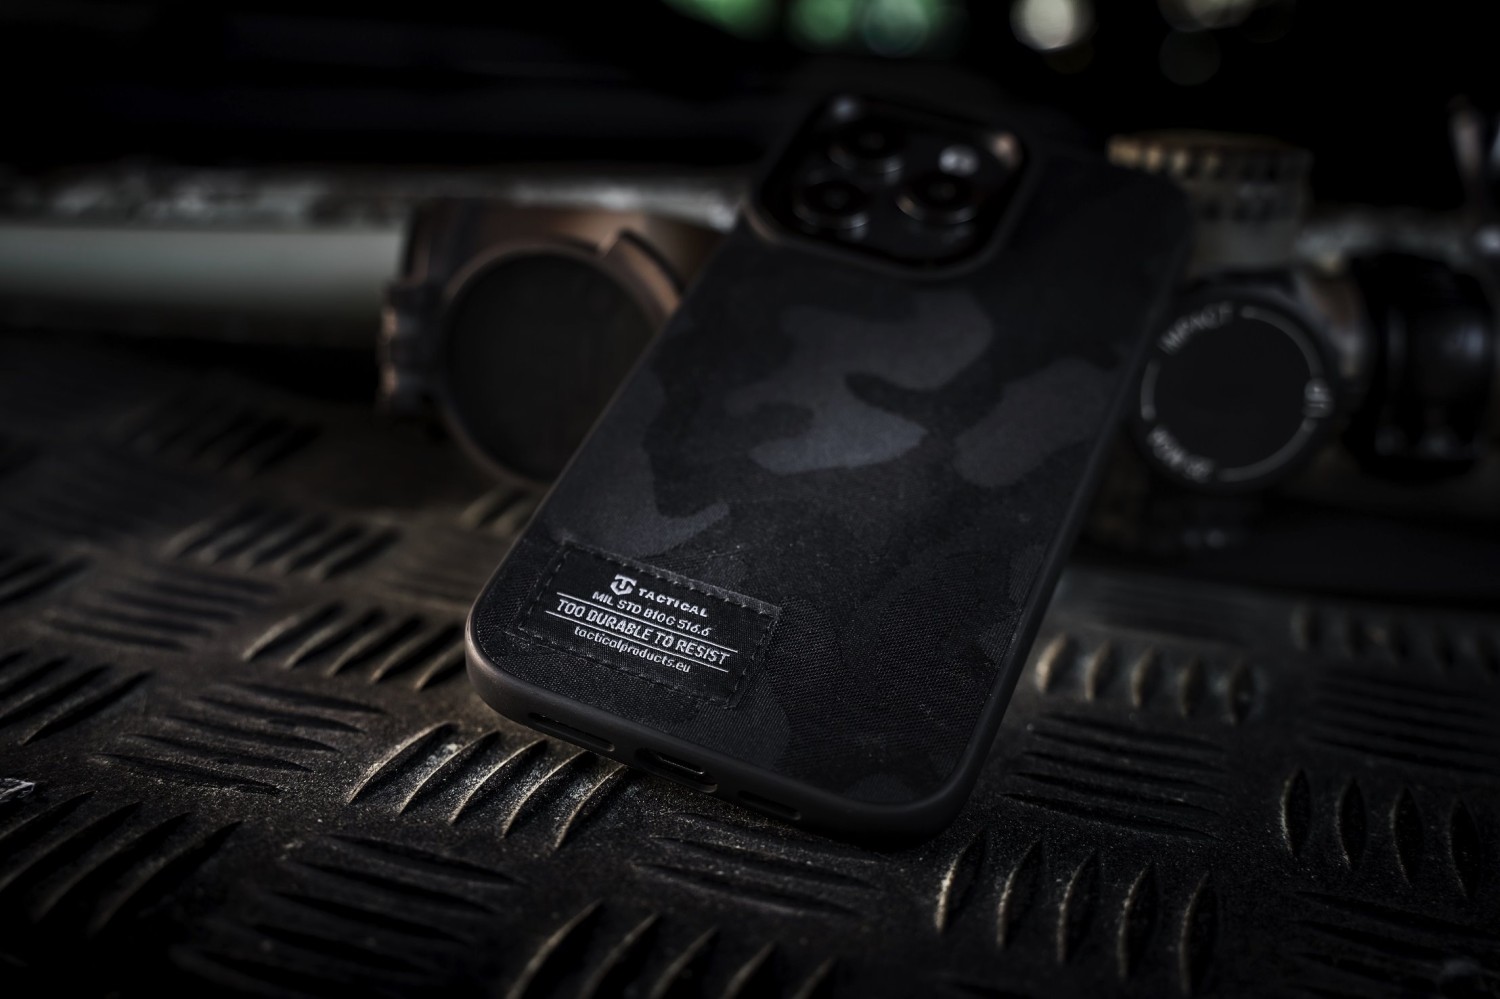 Tactical Camo Troop Kryt pro Apple iPhone 13 Pro Max Black